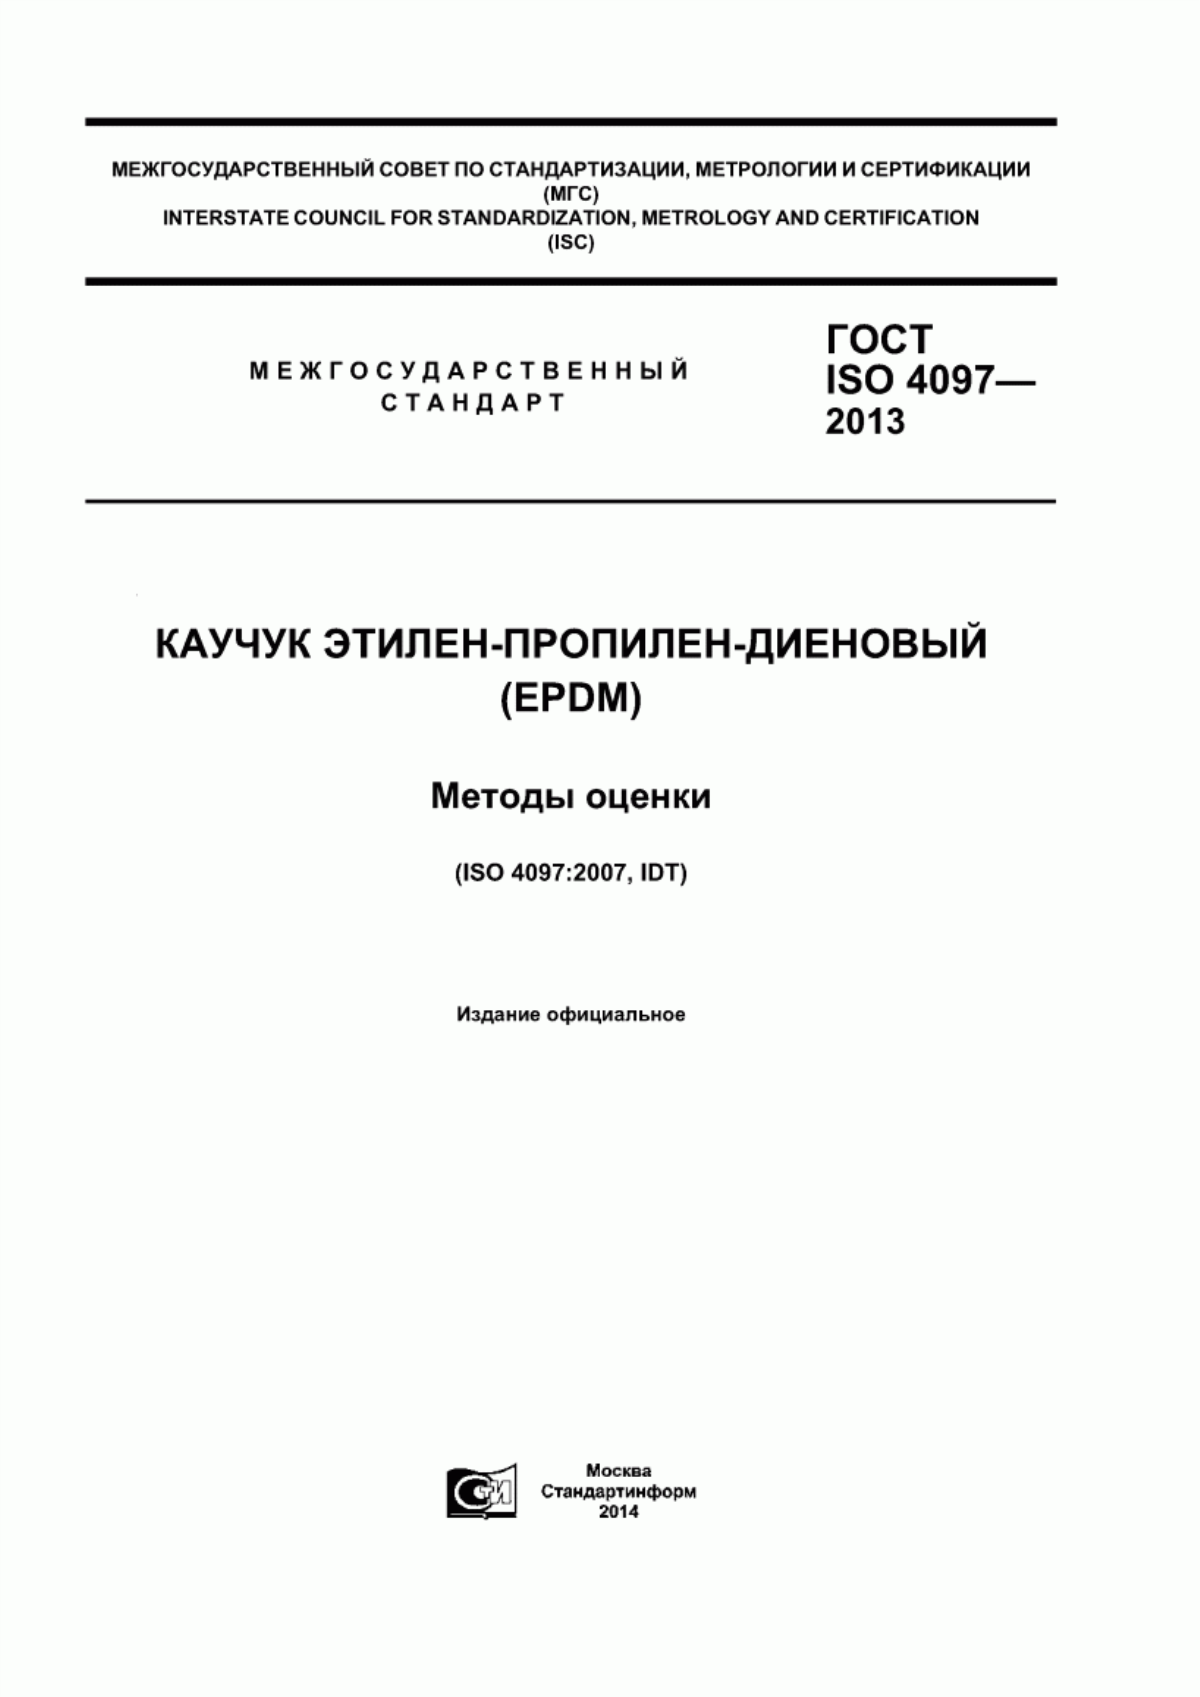 ГОСТ ISO 4097-2013 Каучук этилен-пропилен-диеновый (EPDM). Методы оценки